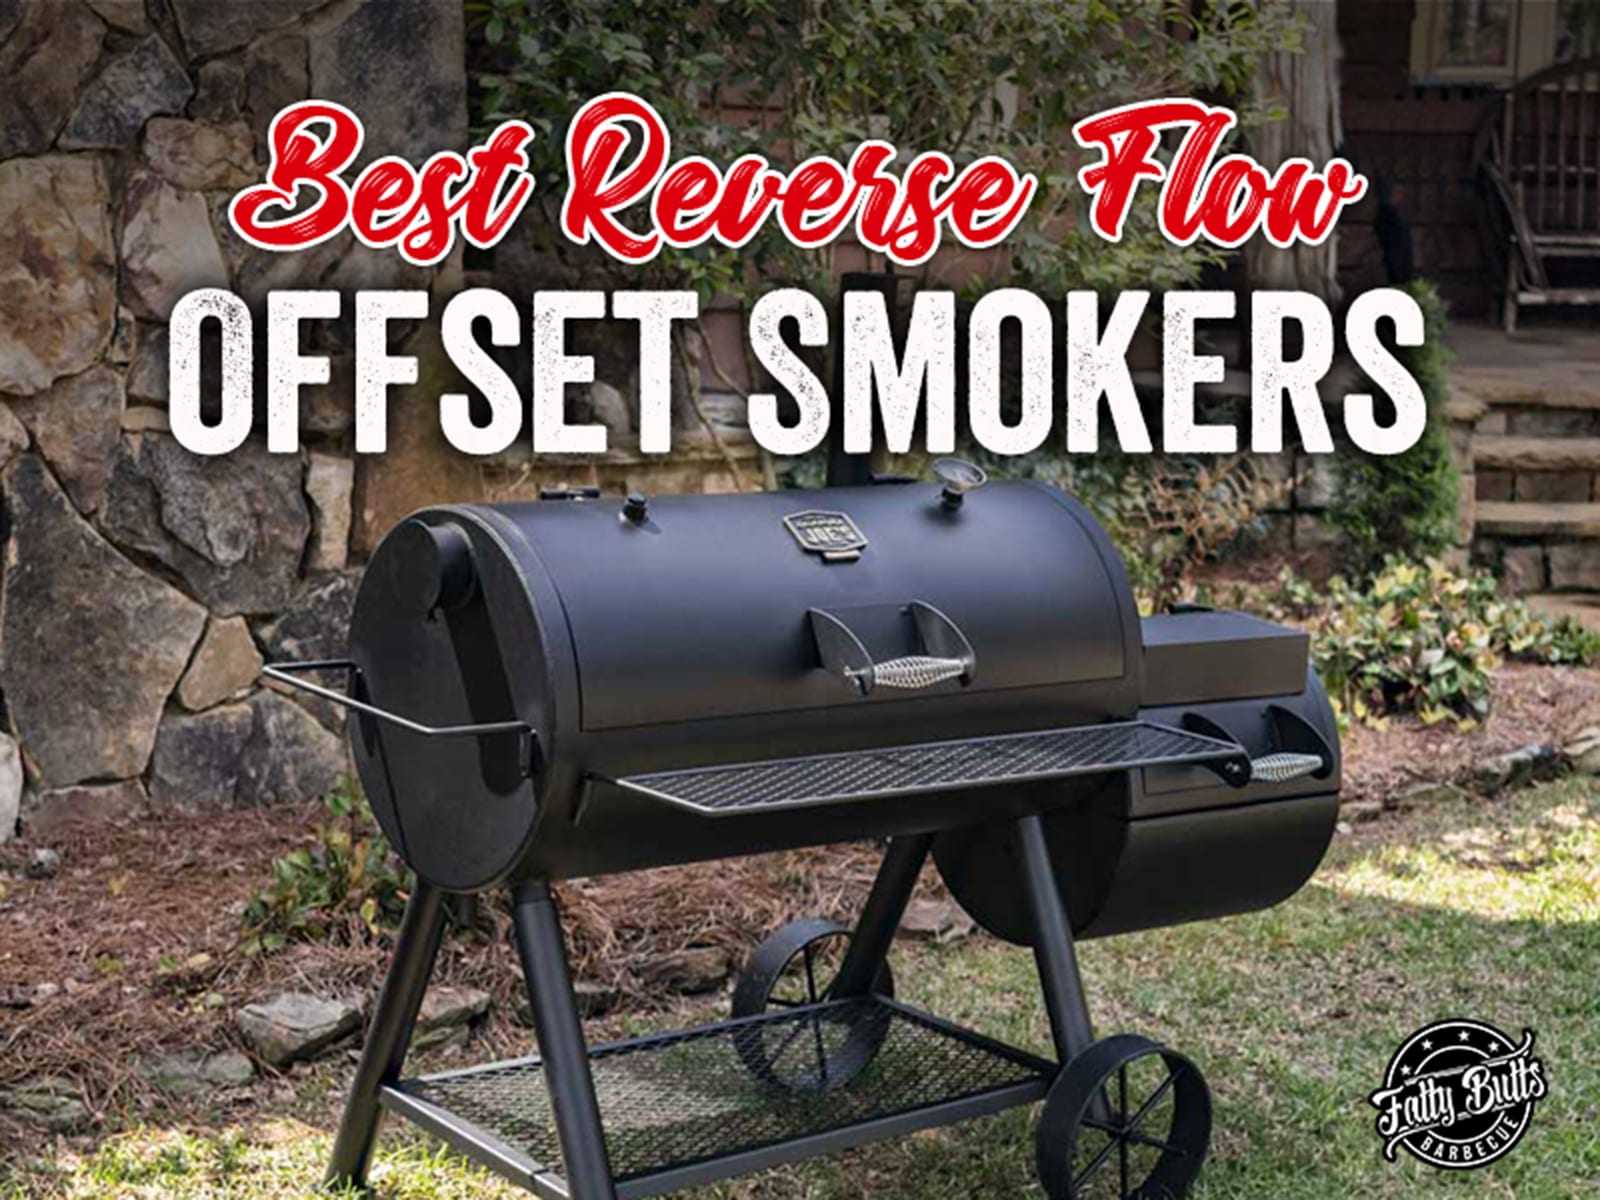 The Best Reverse Flow Offset Smoker